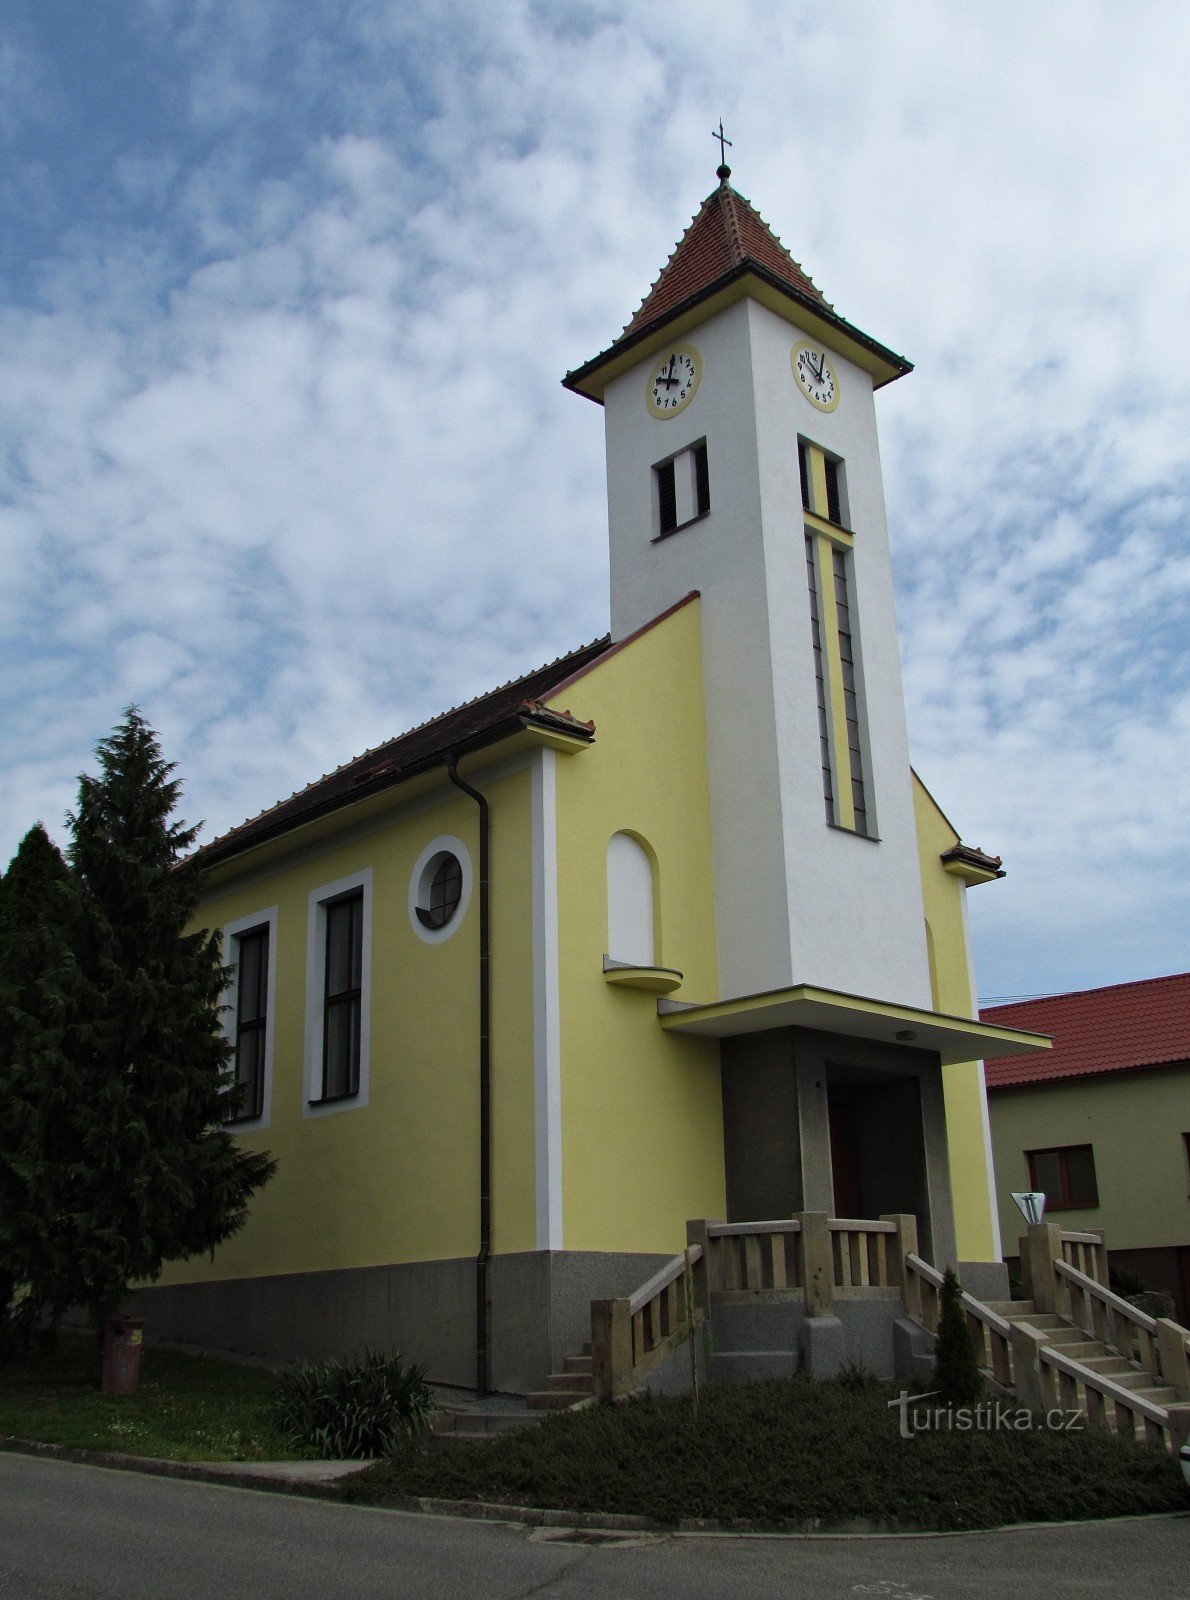 Жлутава - церковь св. Кирилл и Мефодий